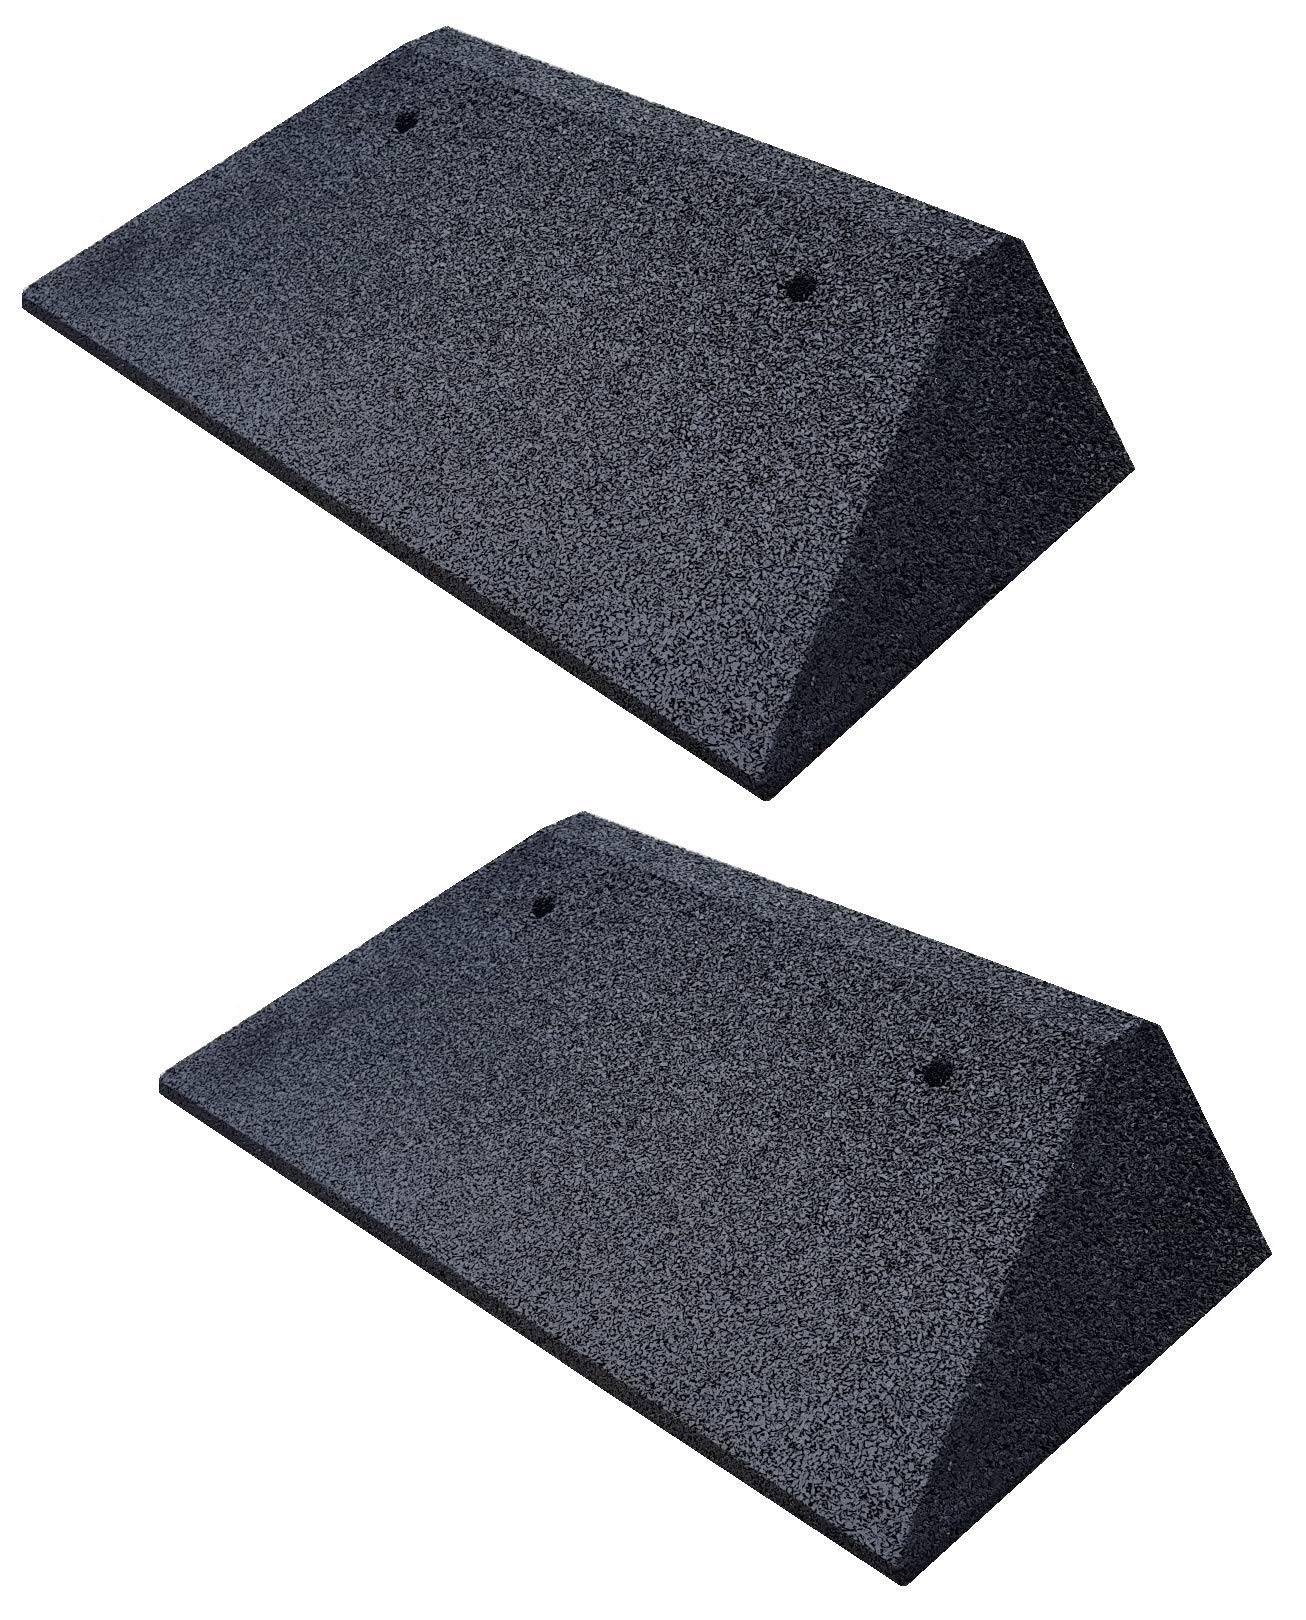 Bordsteinkanten-Rampe-Set (2 Stück) mit beidseitigen Schrägen, LxBxH: 50 x 25 x 5 cm aus Gummi (schwarz) Auffahrrampe,Türschwellenrampe, mit eingelagerten Unterlegscheiben zur Befestigung